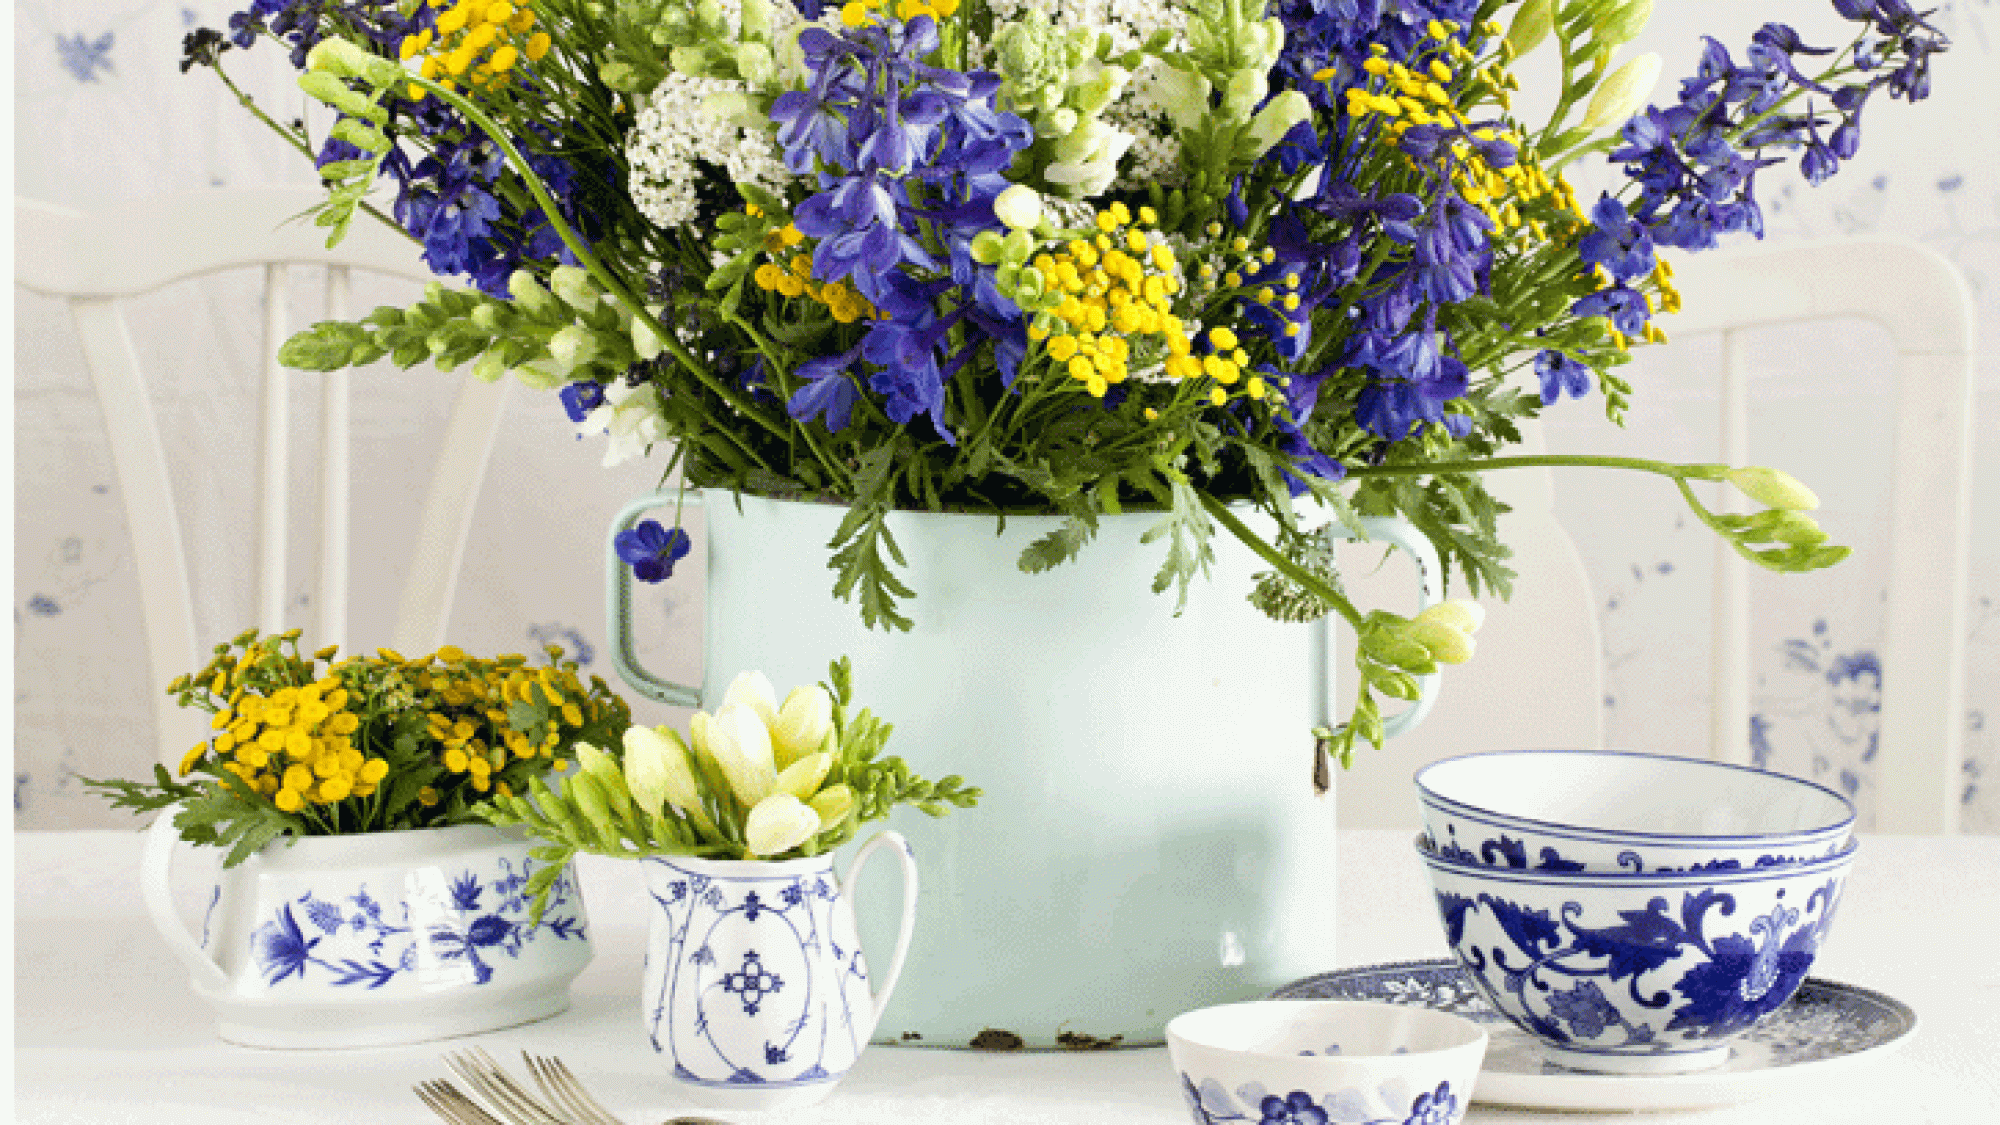 הפתיעו את האורחים שלכם ושלבו פרחים בעיצוב שולחן החג | צלם: בועז לביא